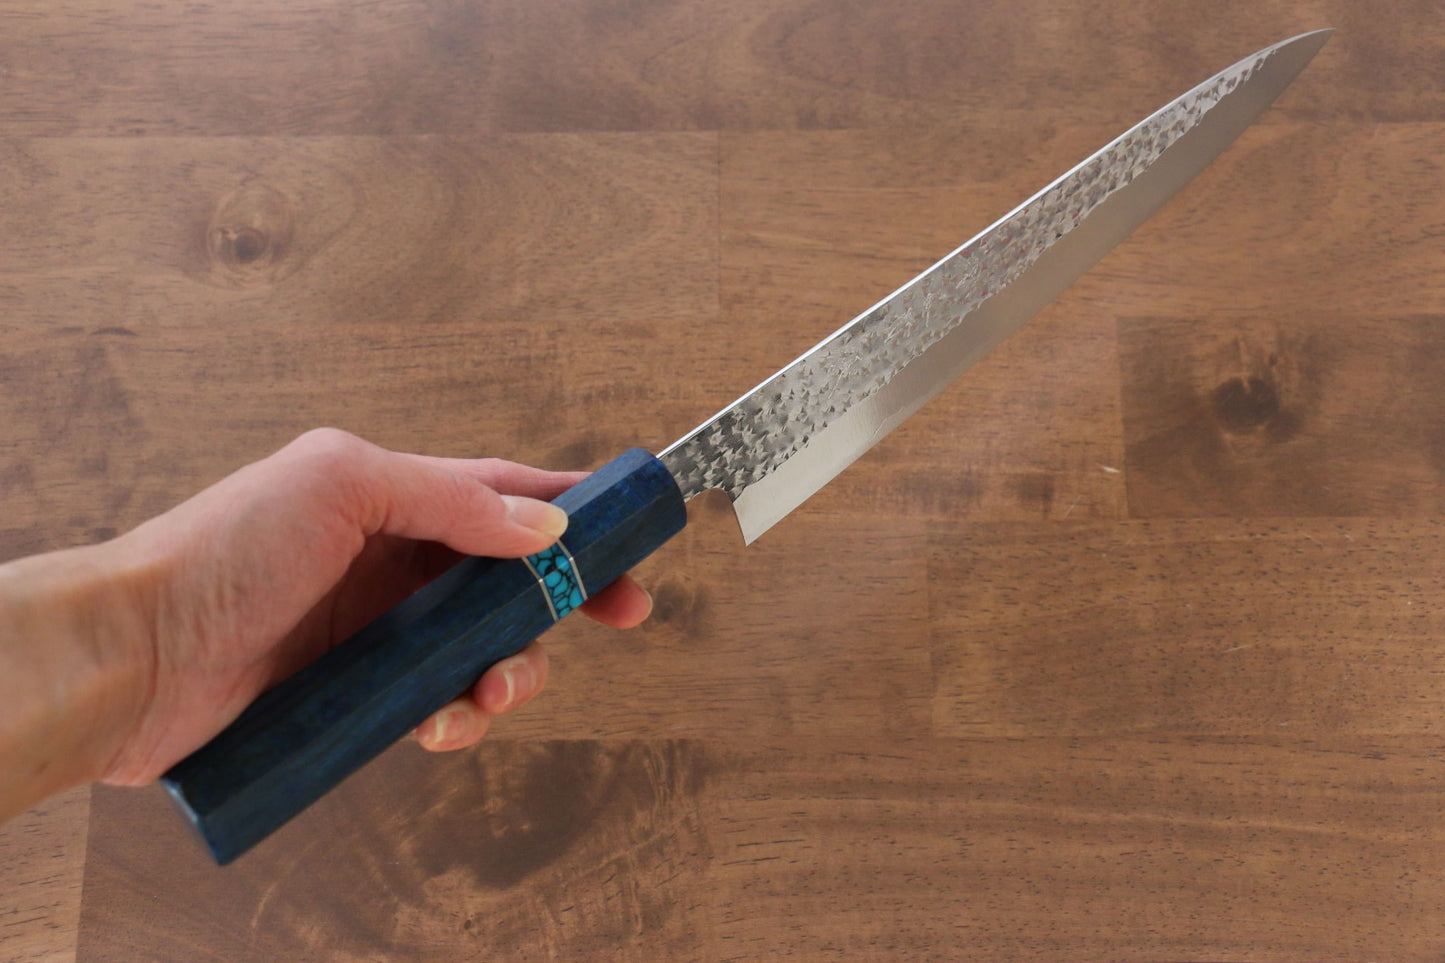 Yu Kurosaki Senko R2/SG2 Hammered Sujihiki Japanese Knife 240mm Maple(With turquoise ring Blue) Handle - Japanny - Best Japanese Knife